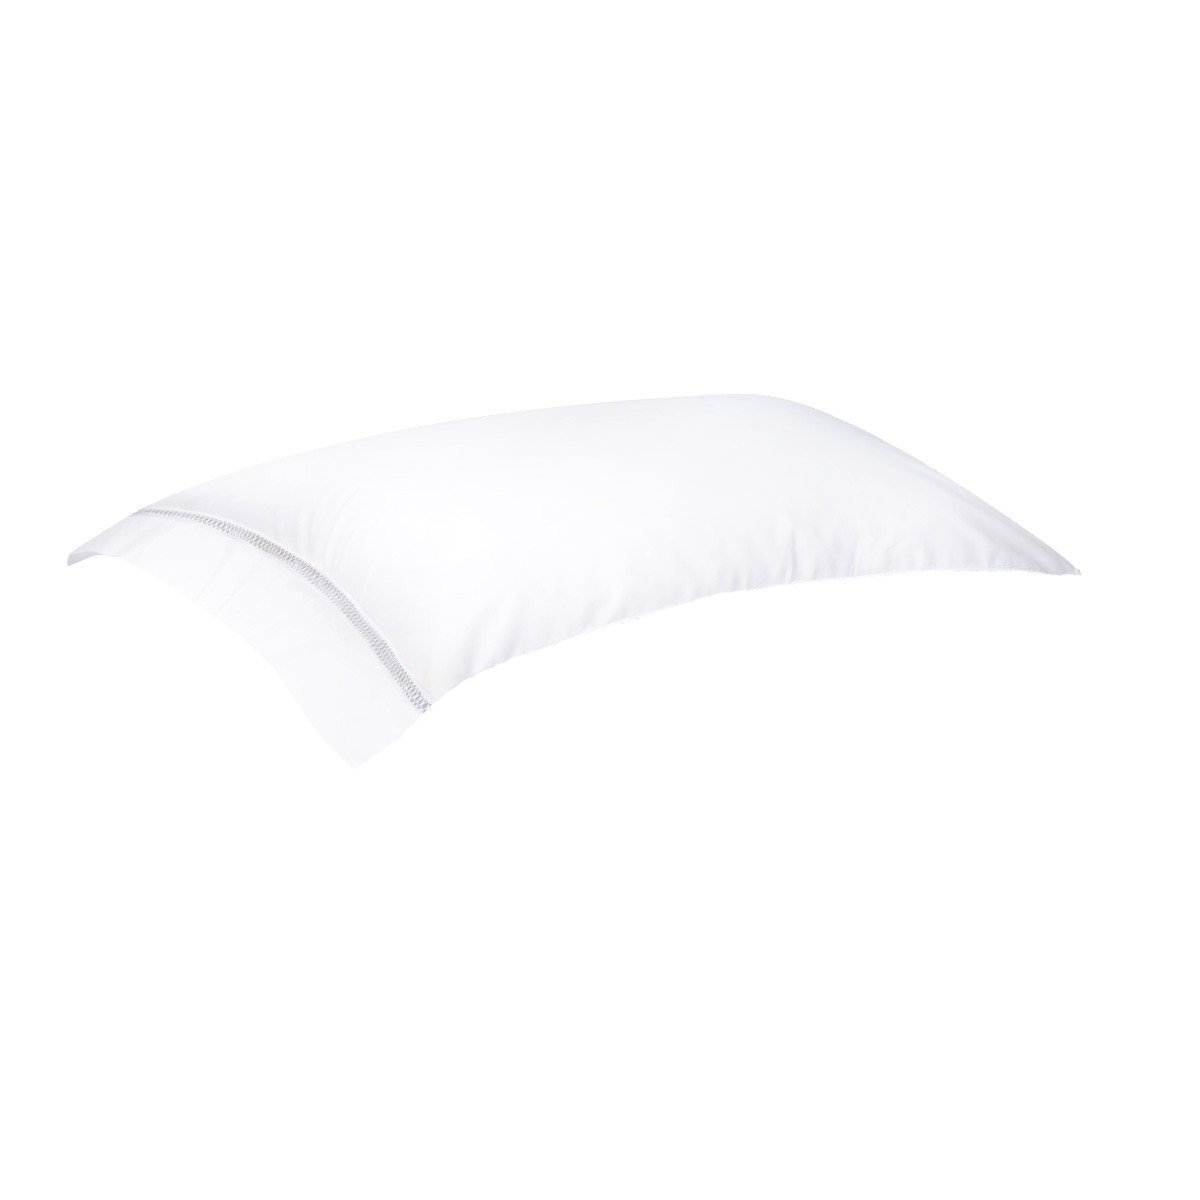 Fig Linens - Walton Blanc Bedding by Yves Delorme - White Pillowcase